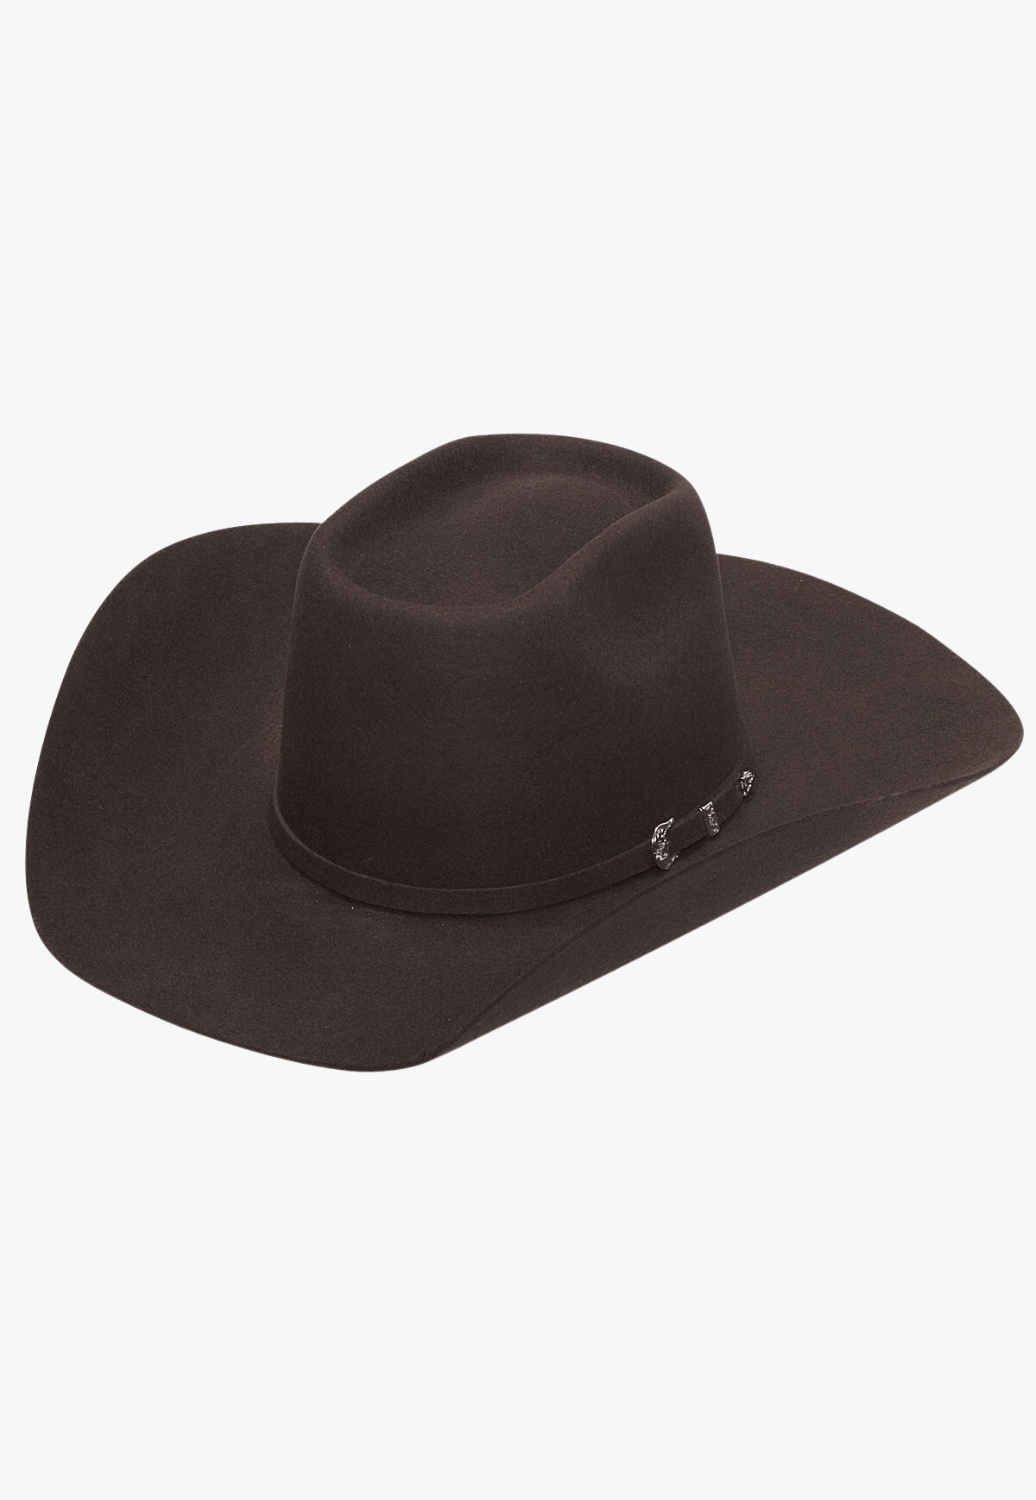 Twister HATS - Felt Twister Rowdy Wool Hat